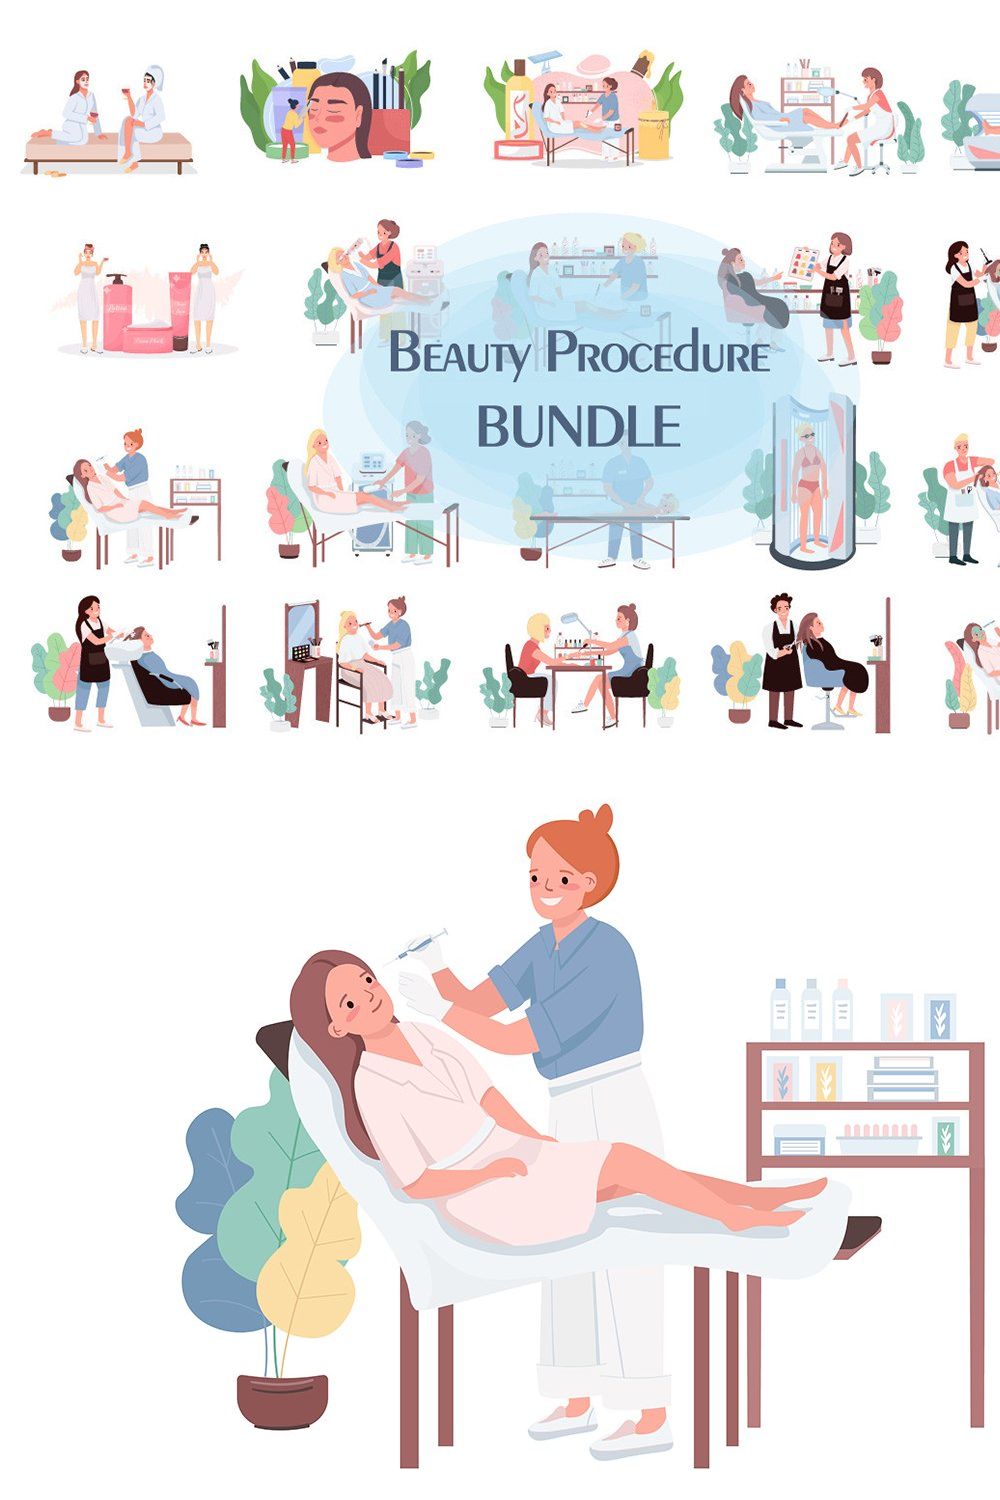 Beauty procedure bundle pinterest preview image.